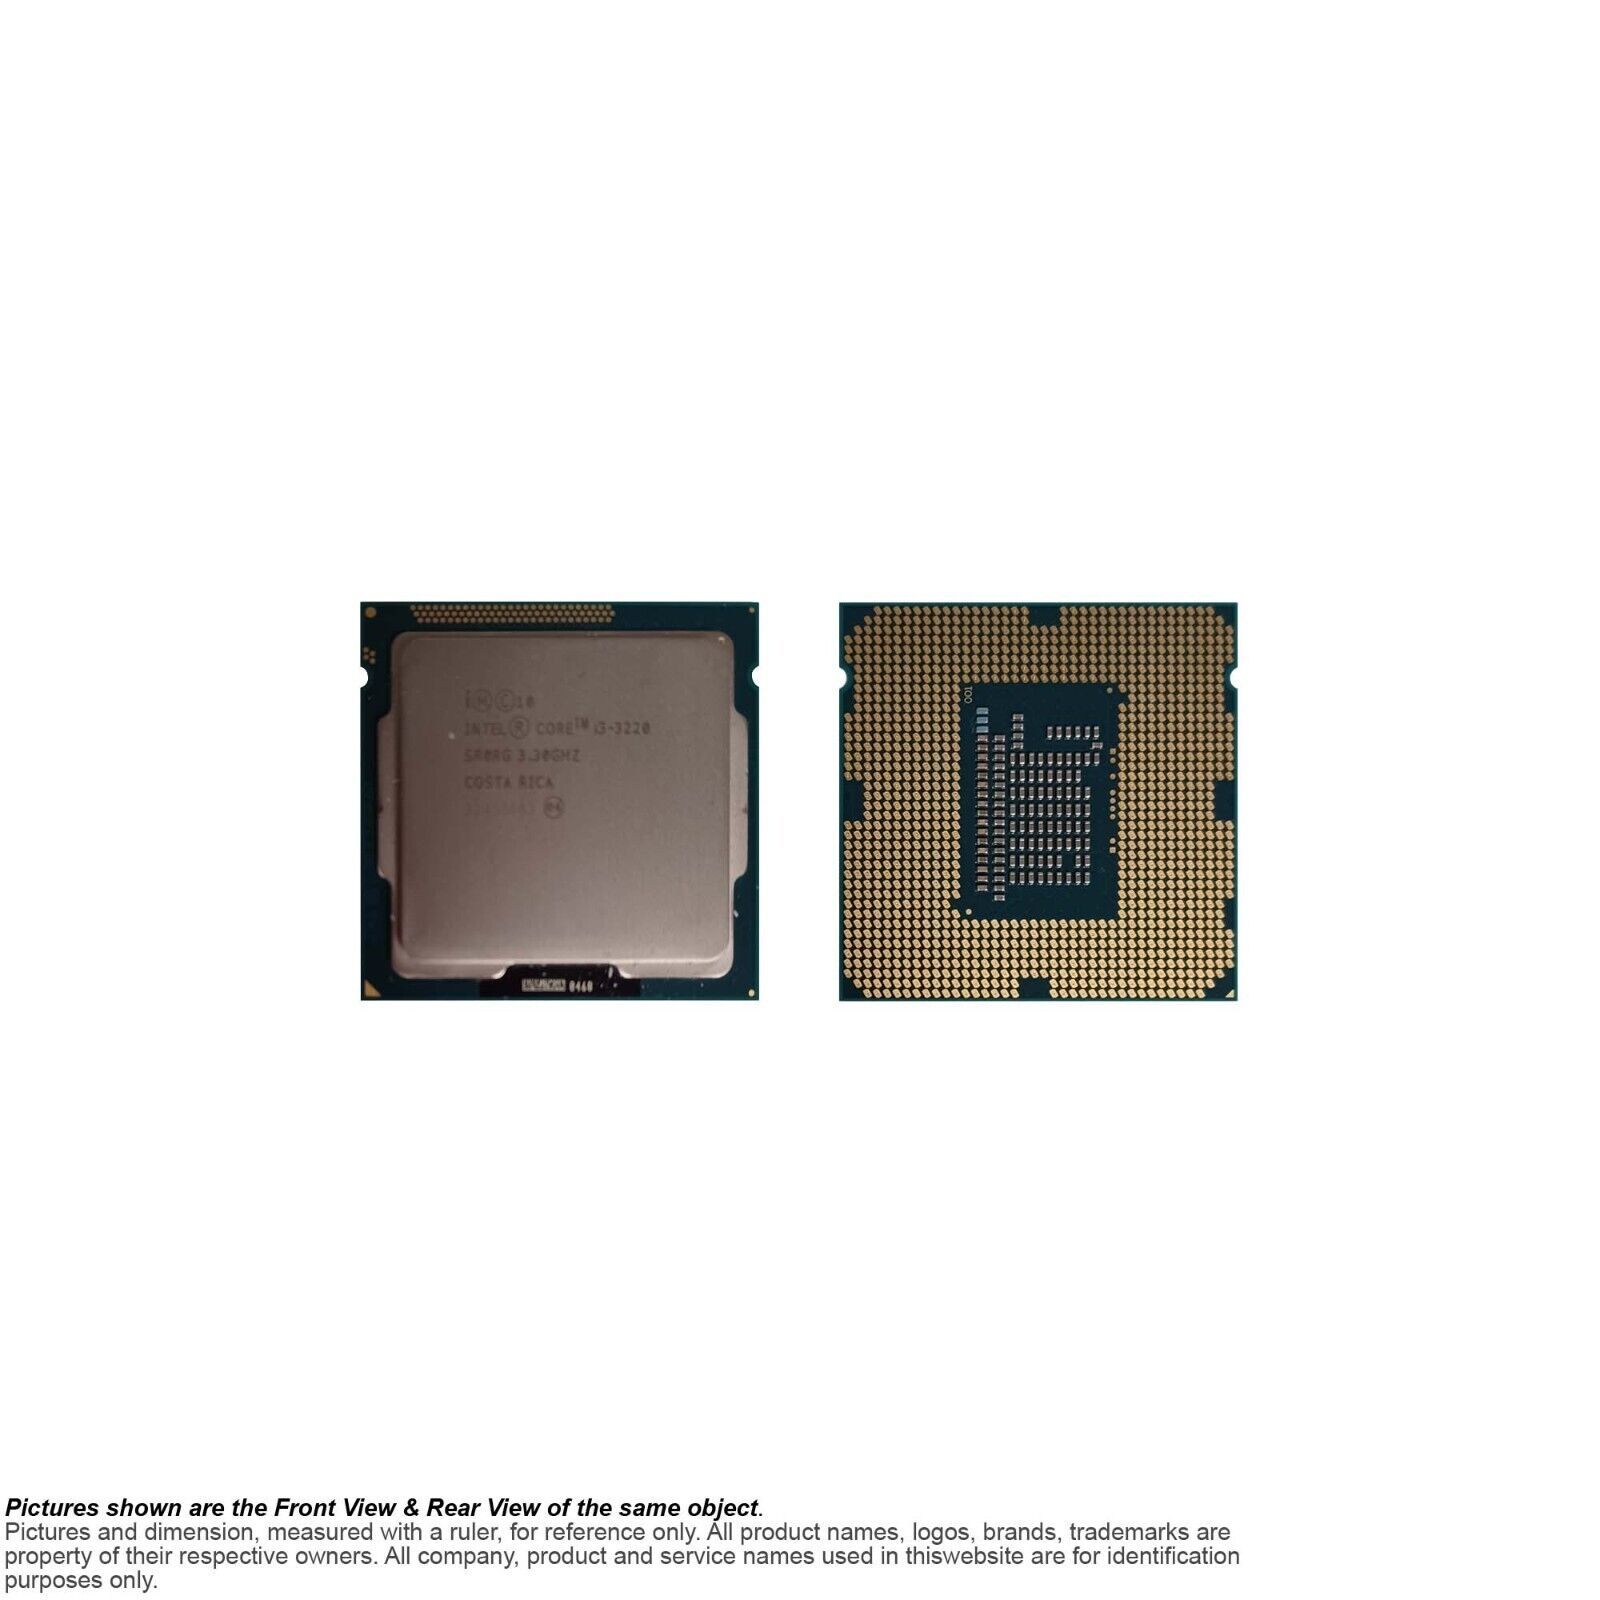 Intel CPU Processor Core i3-3220 SR0RG 3.3GHz / 3M / 5GTs Socket 1155 LGA1155